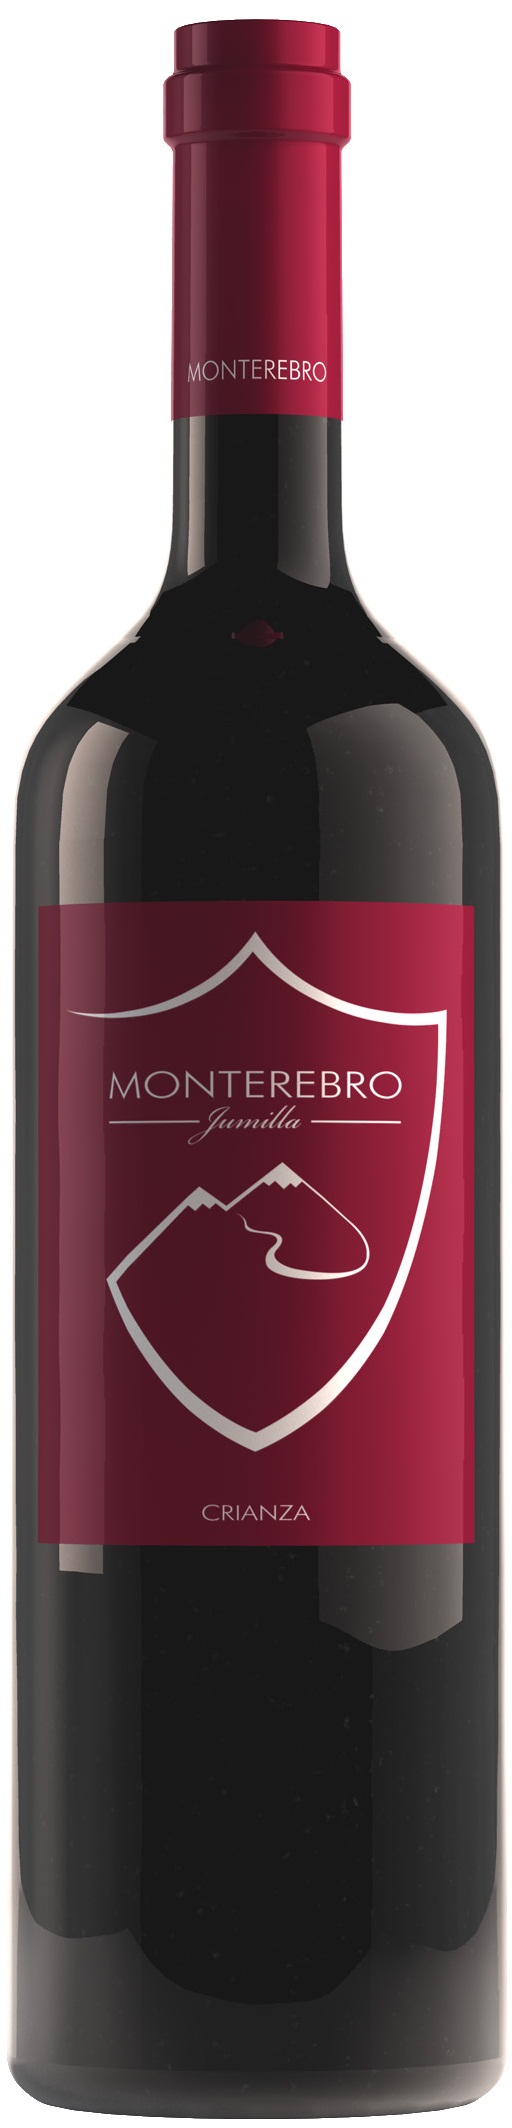 Image of Wine bottle Monterebro Crianza